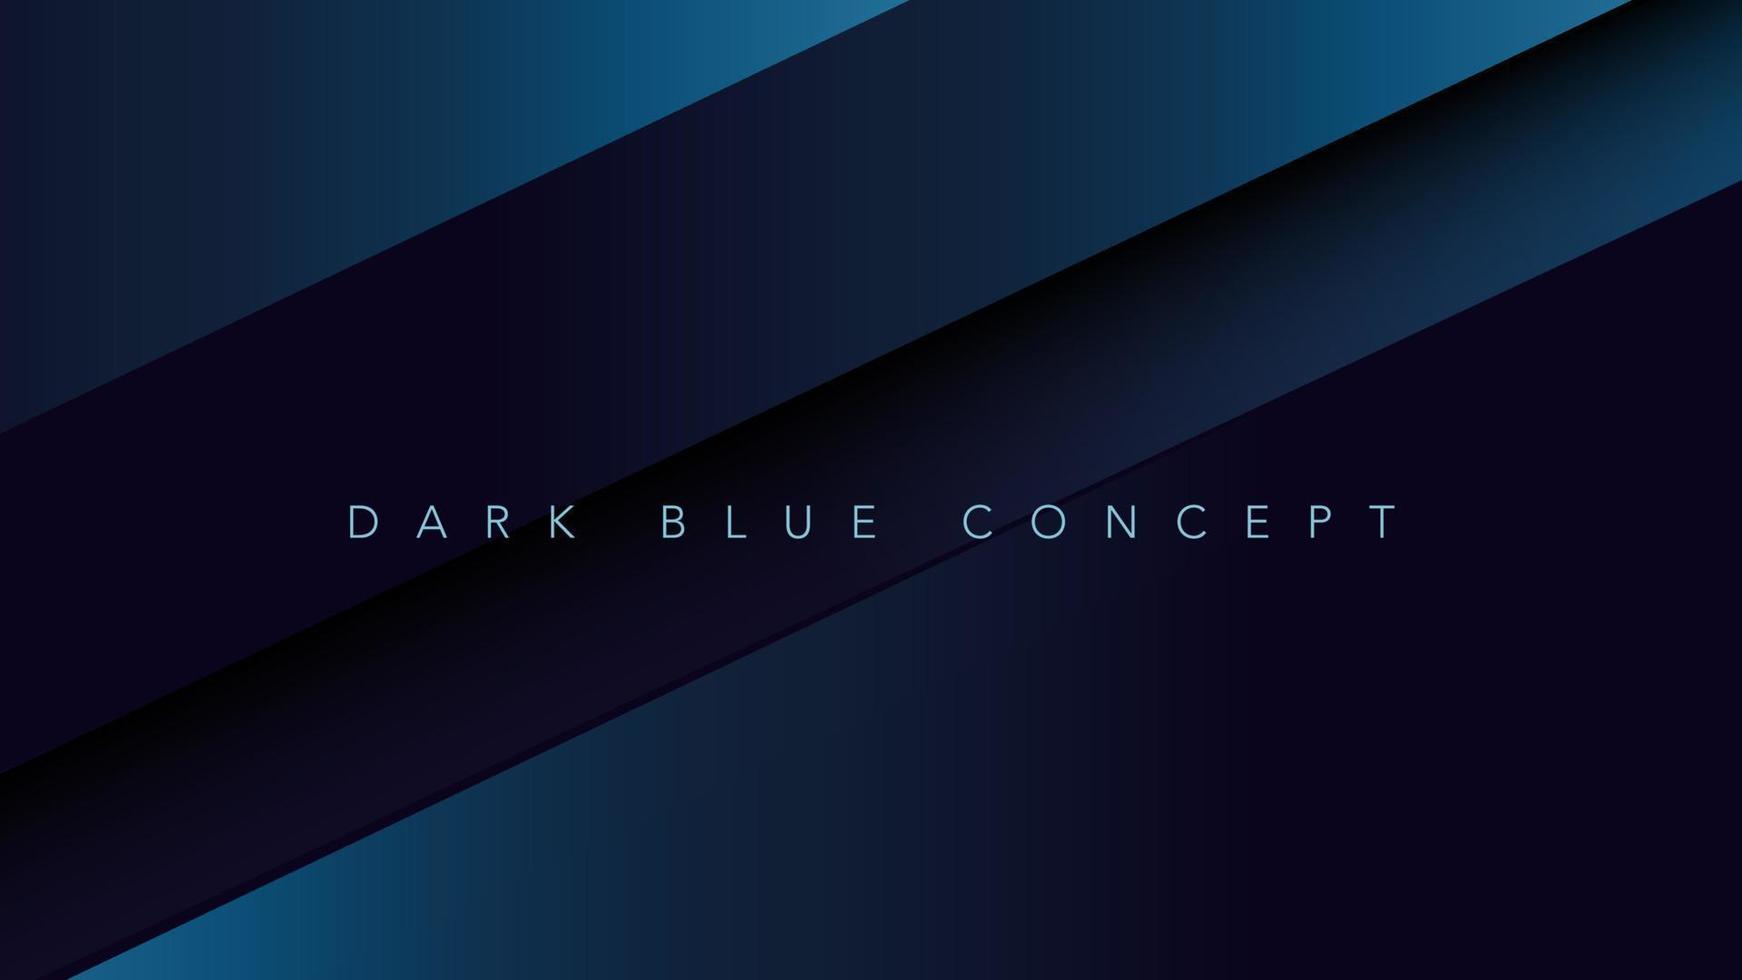 modern minimalistisk mörk blå premie abstrakt bakgrund med lyx geometrisk mörk form. exklusiv tapet design för hemsida, affisch, broschyr, presentation vektor